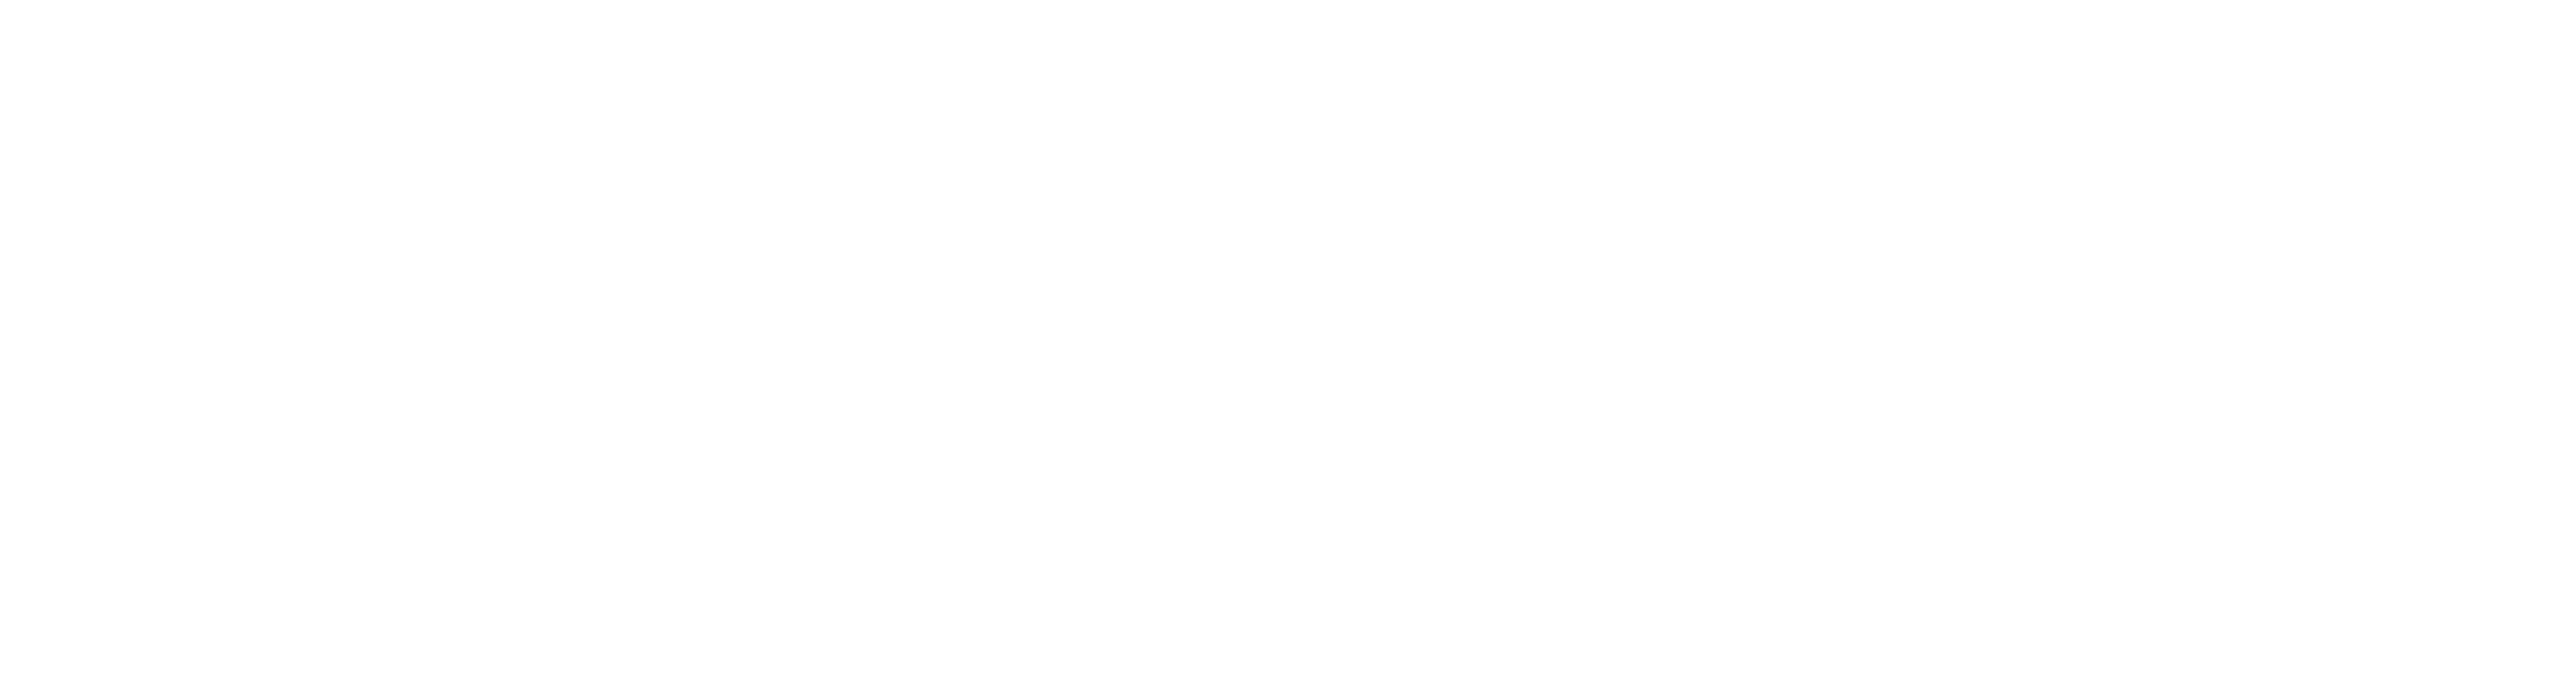 Stomatologia Molaris logo